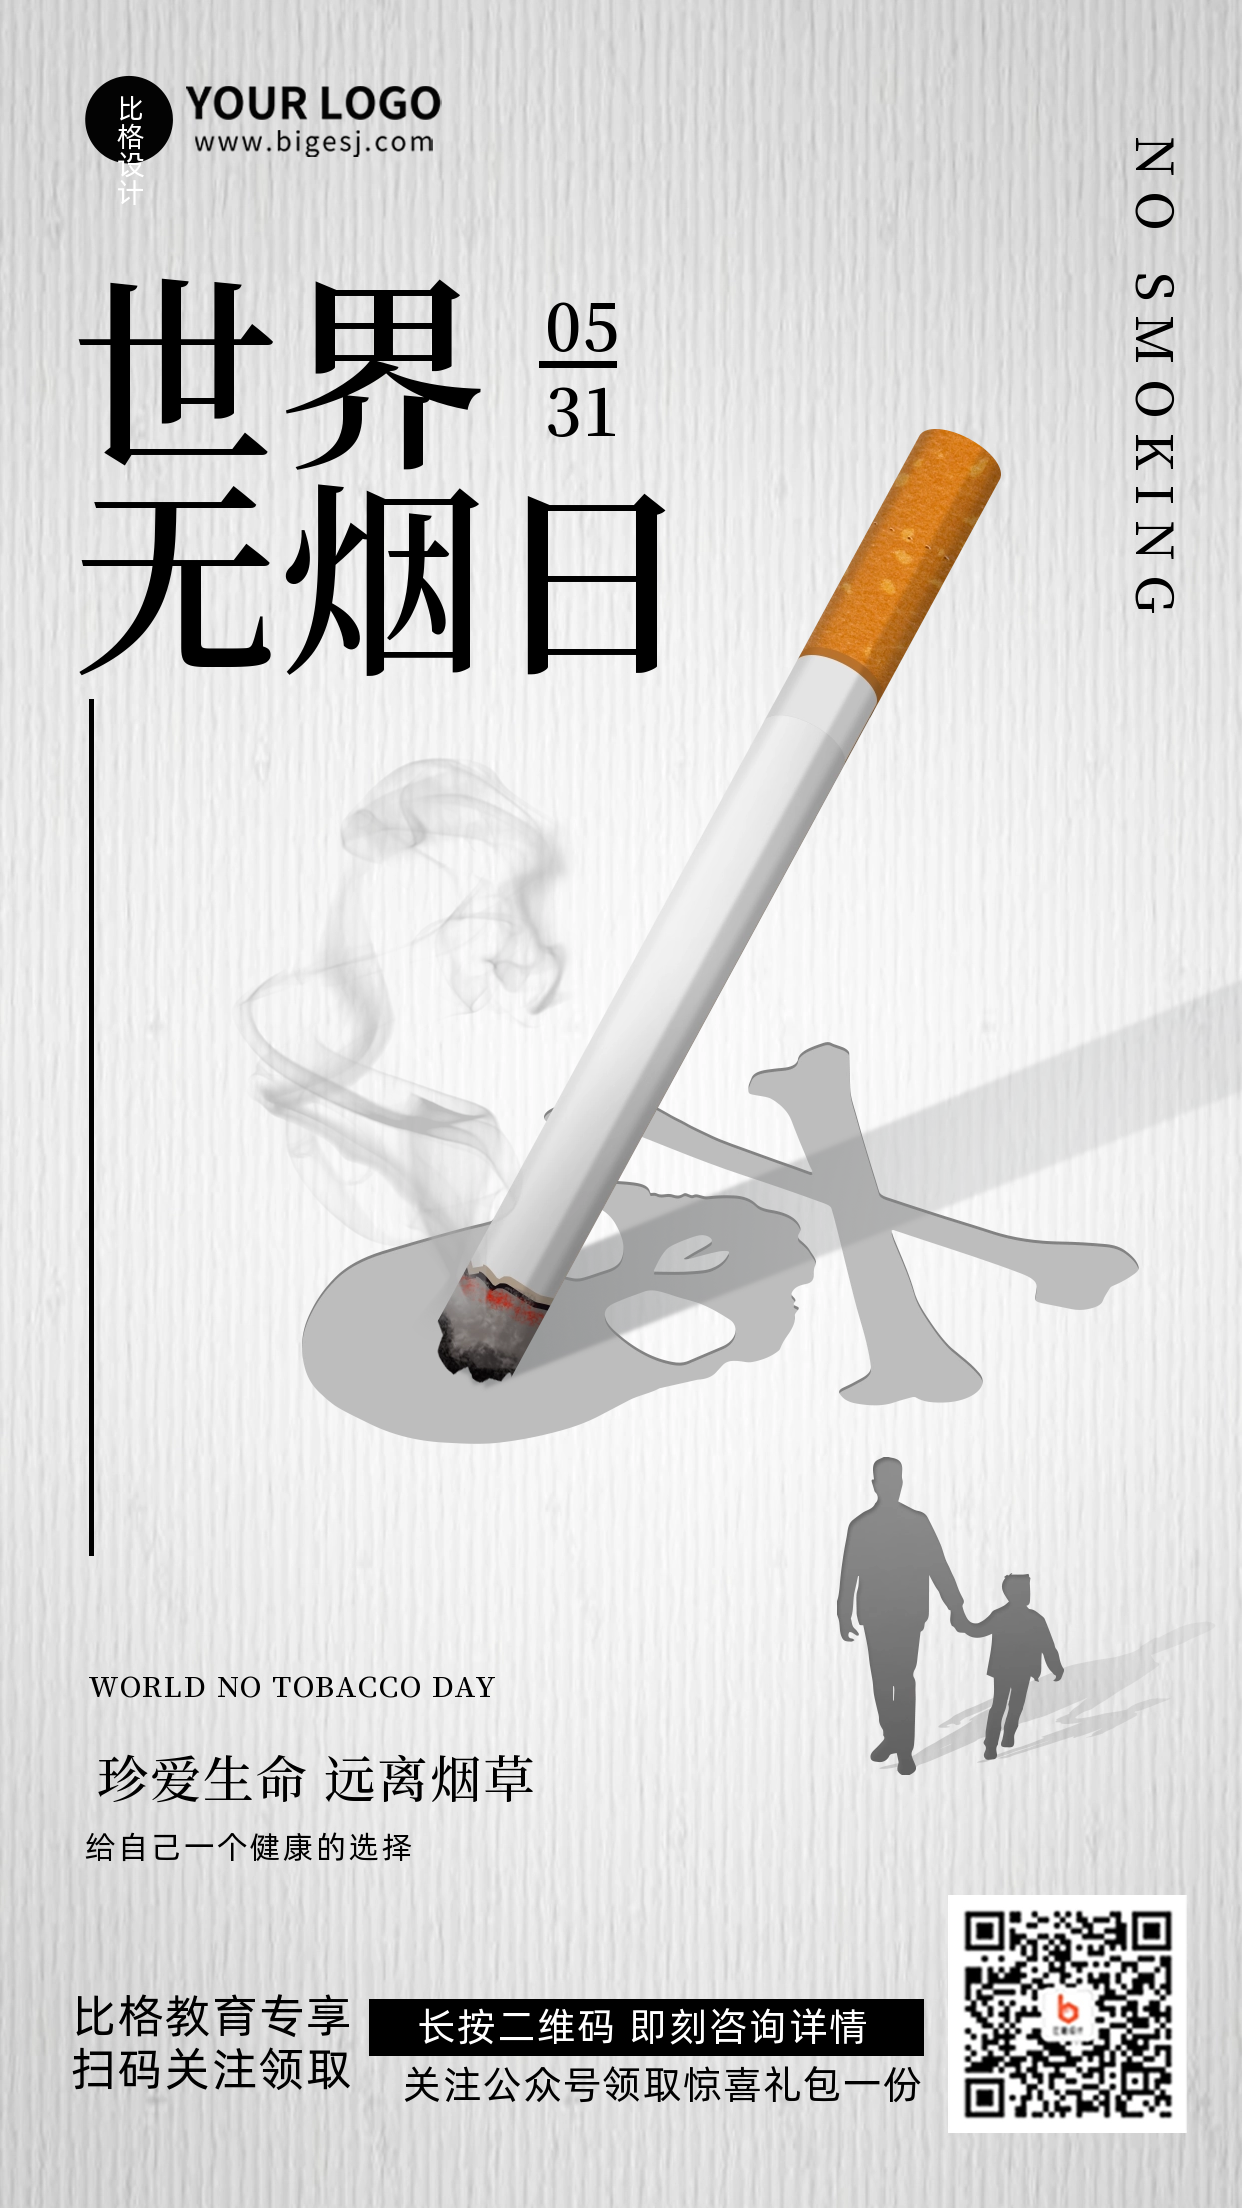 世界无烟日禁止宣传活动推广手机海报